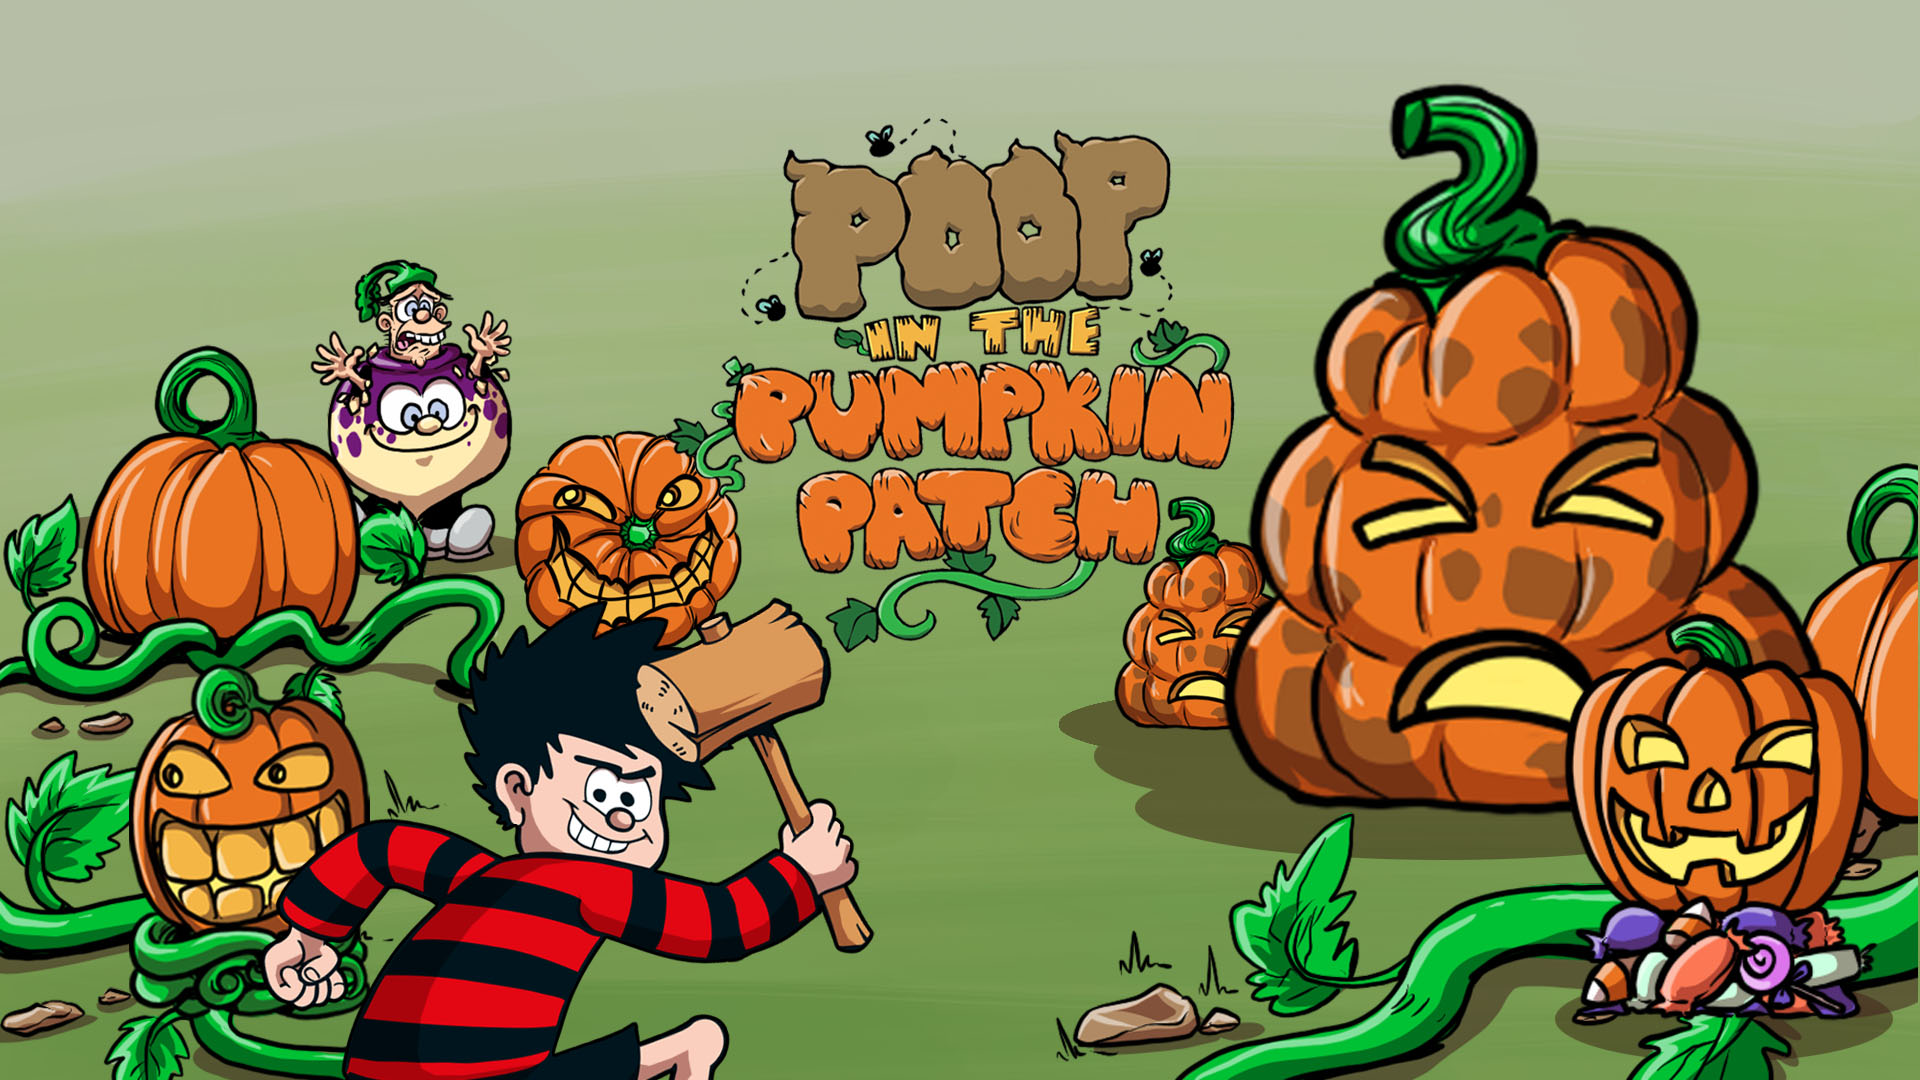 Poop in the Pumpkin Patch!